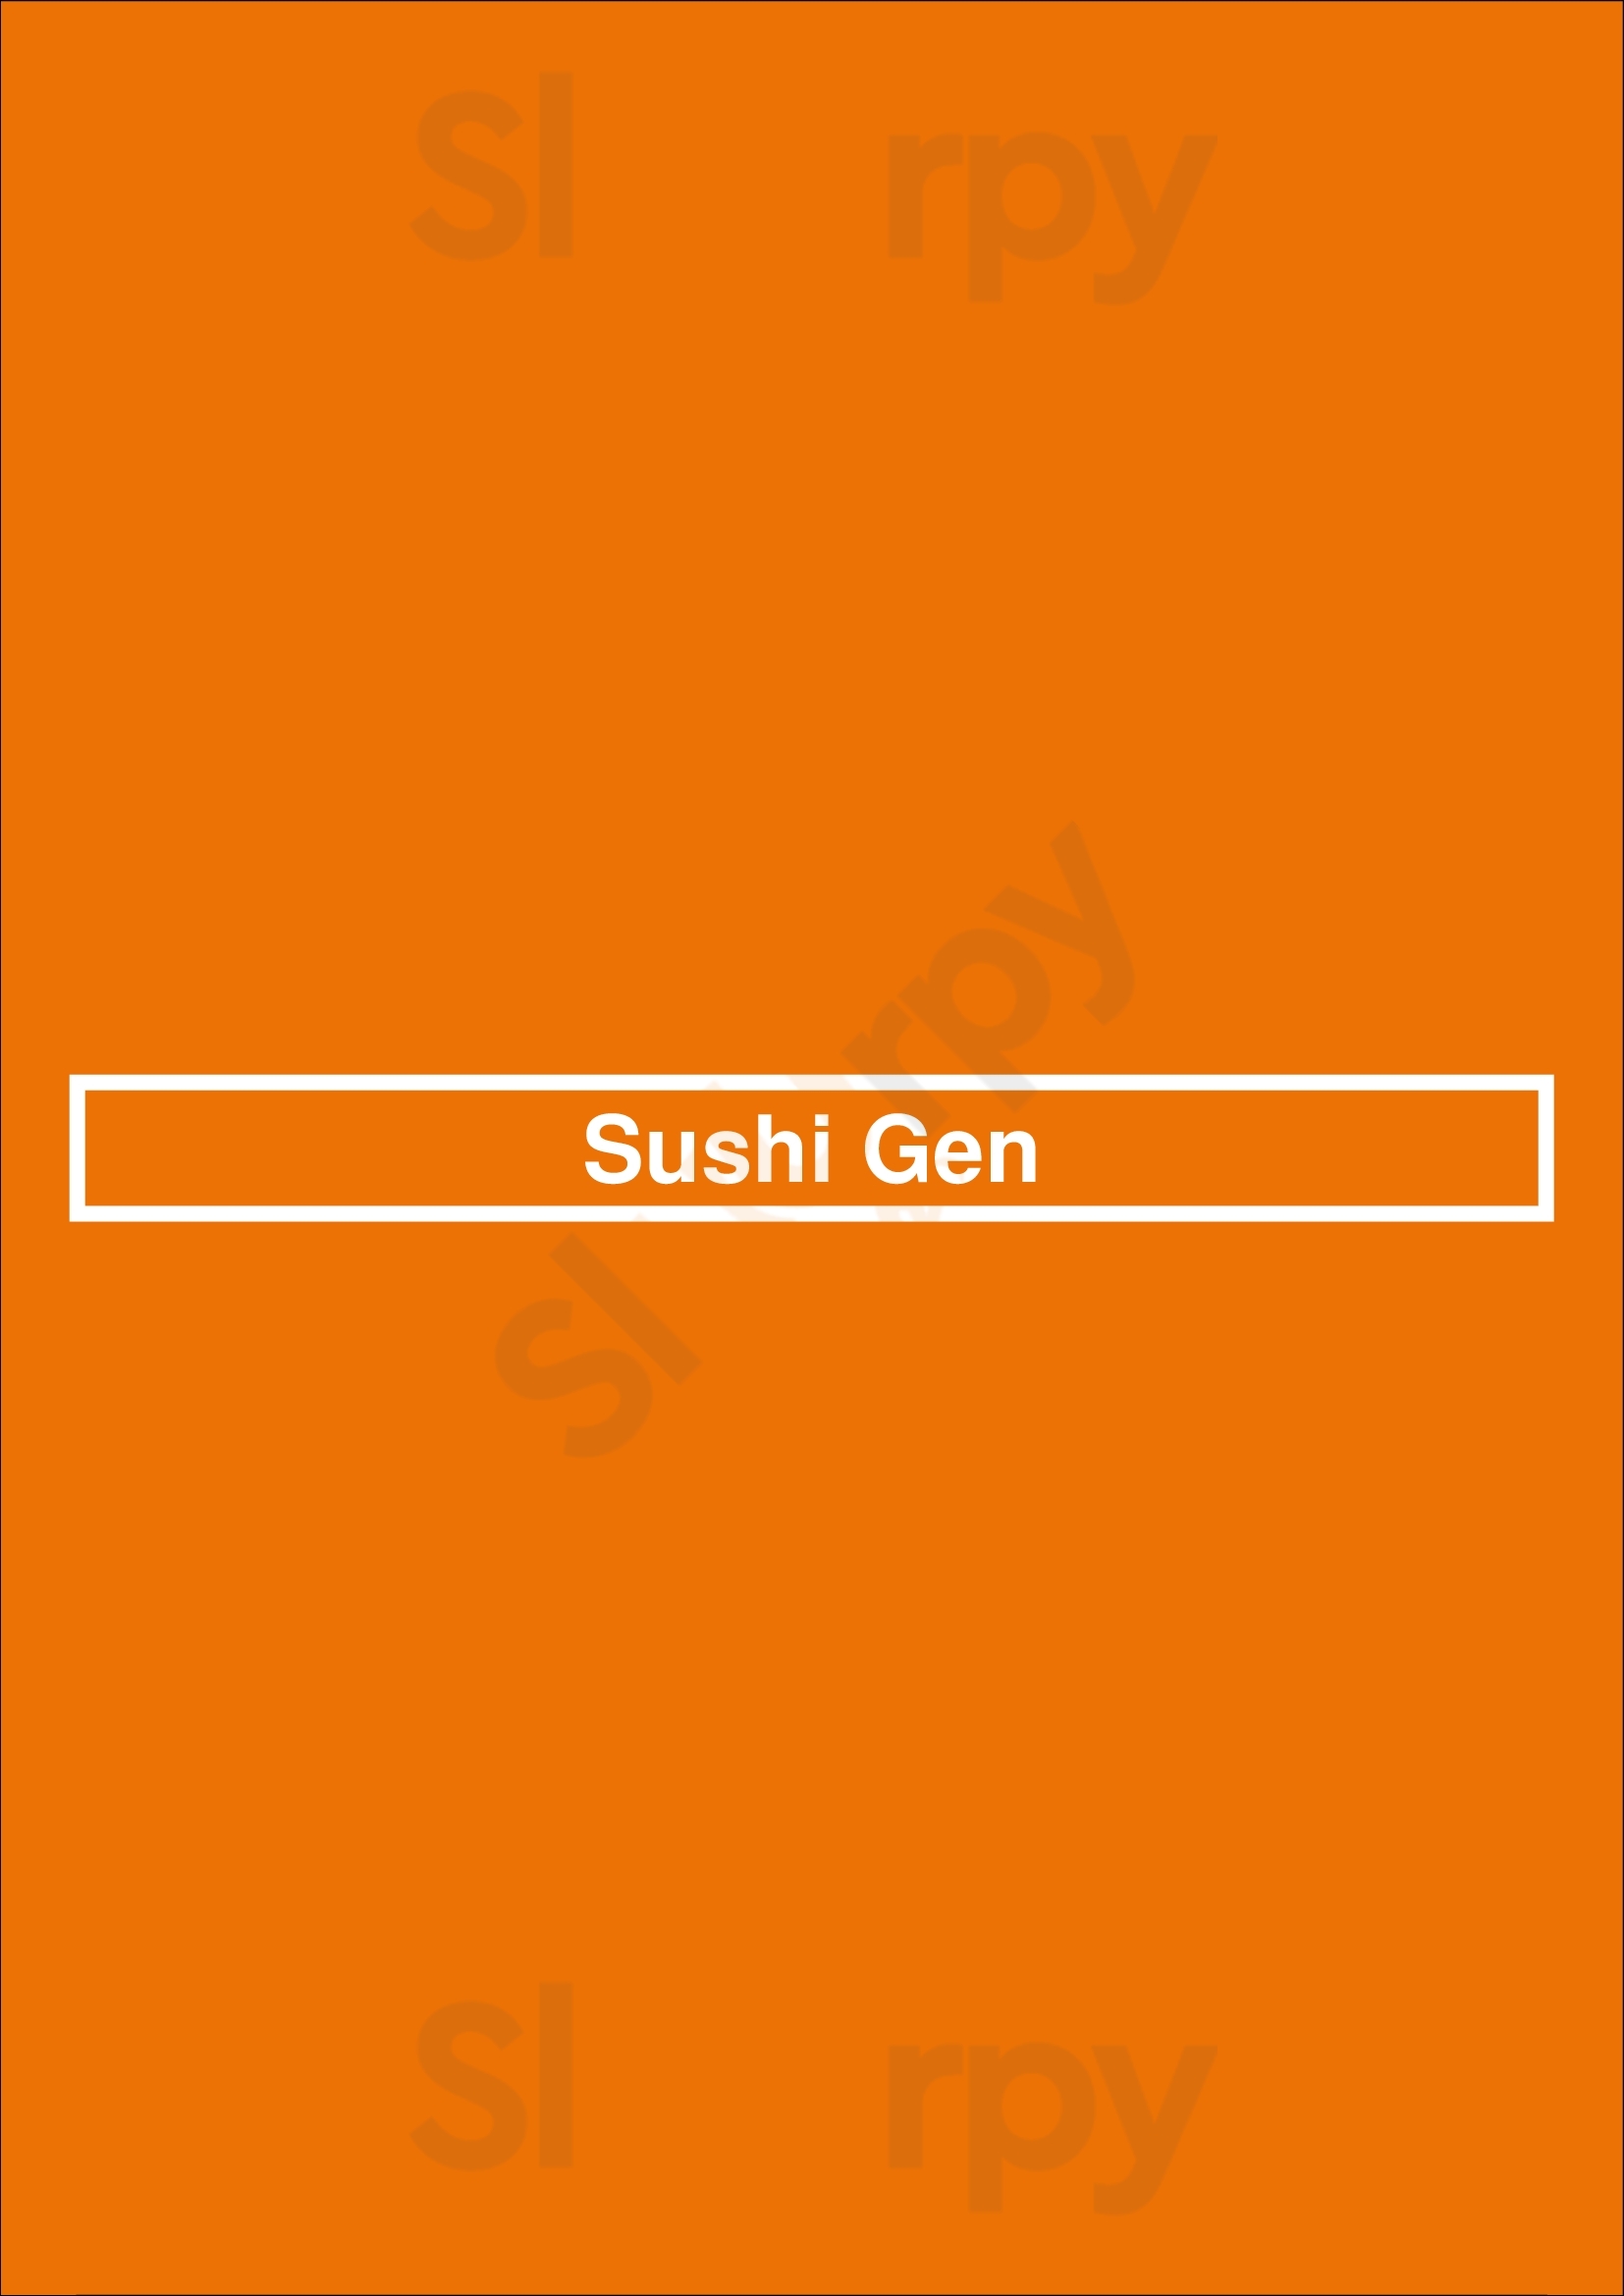 Sushi Gen Winnipeg Menu - 1